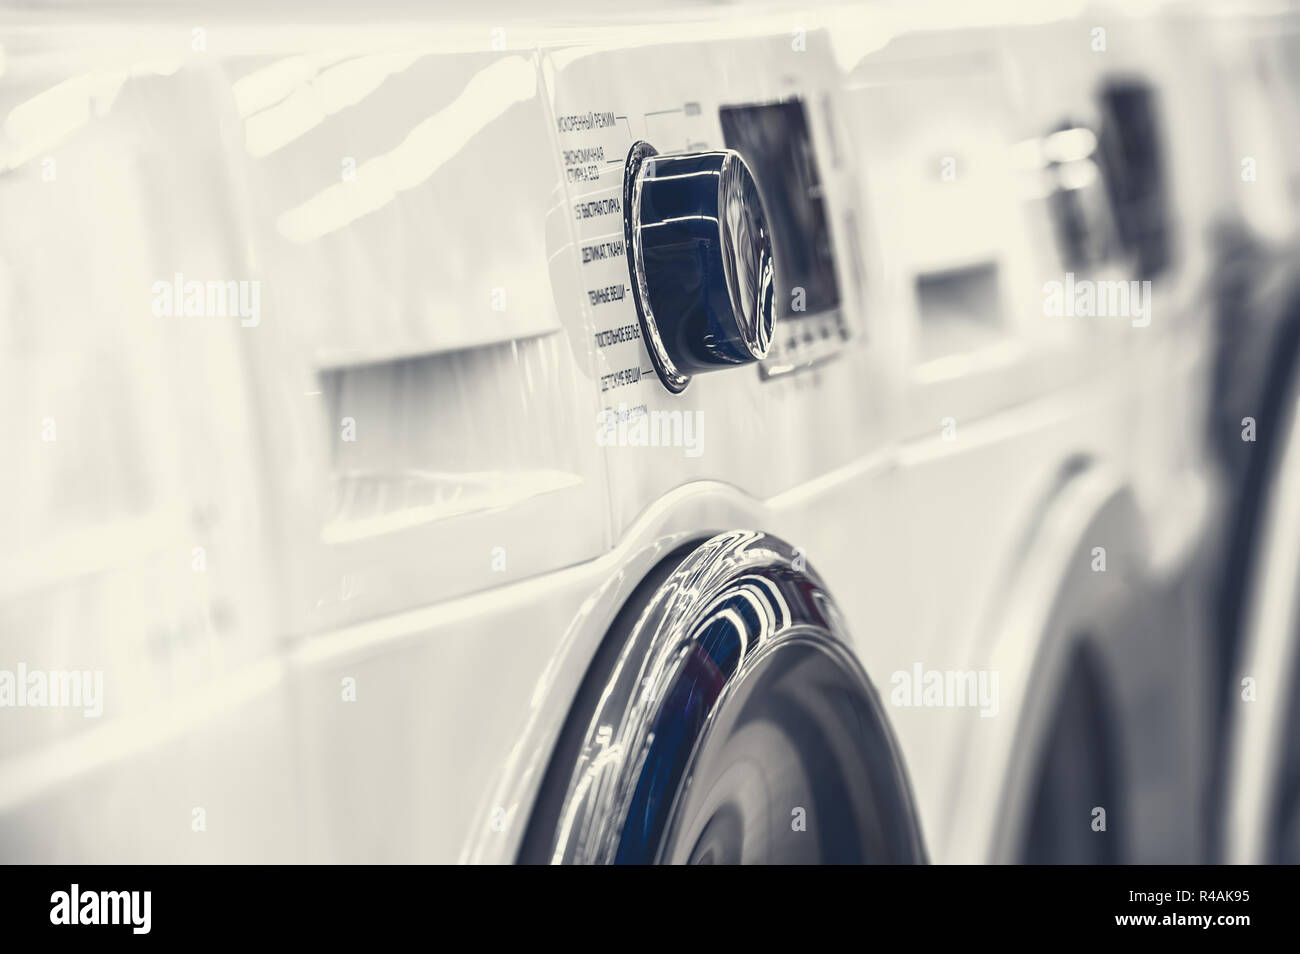 washing mashine control panel Stock Photo